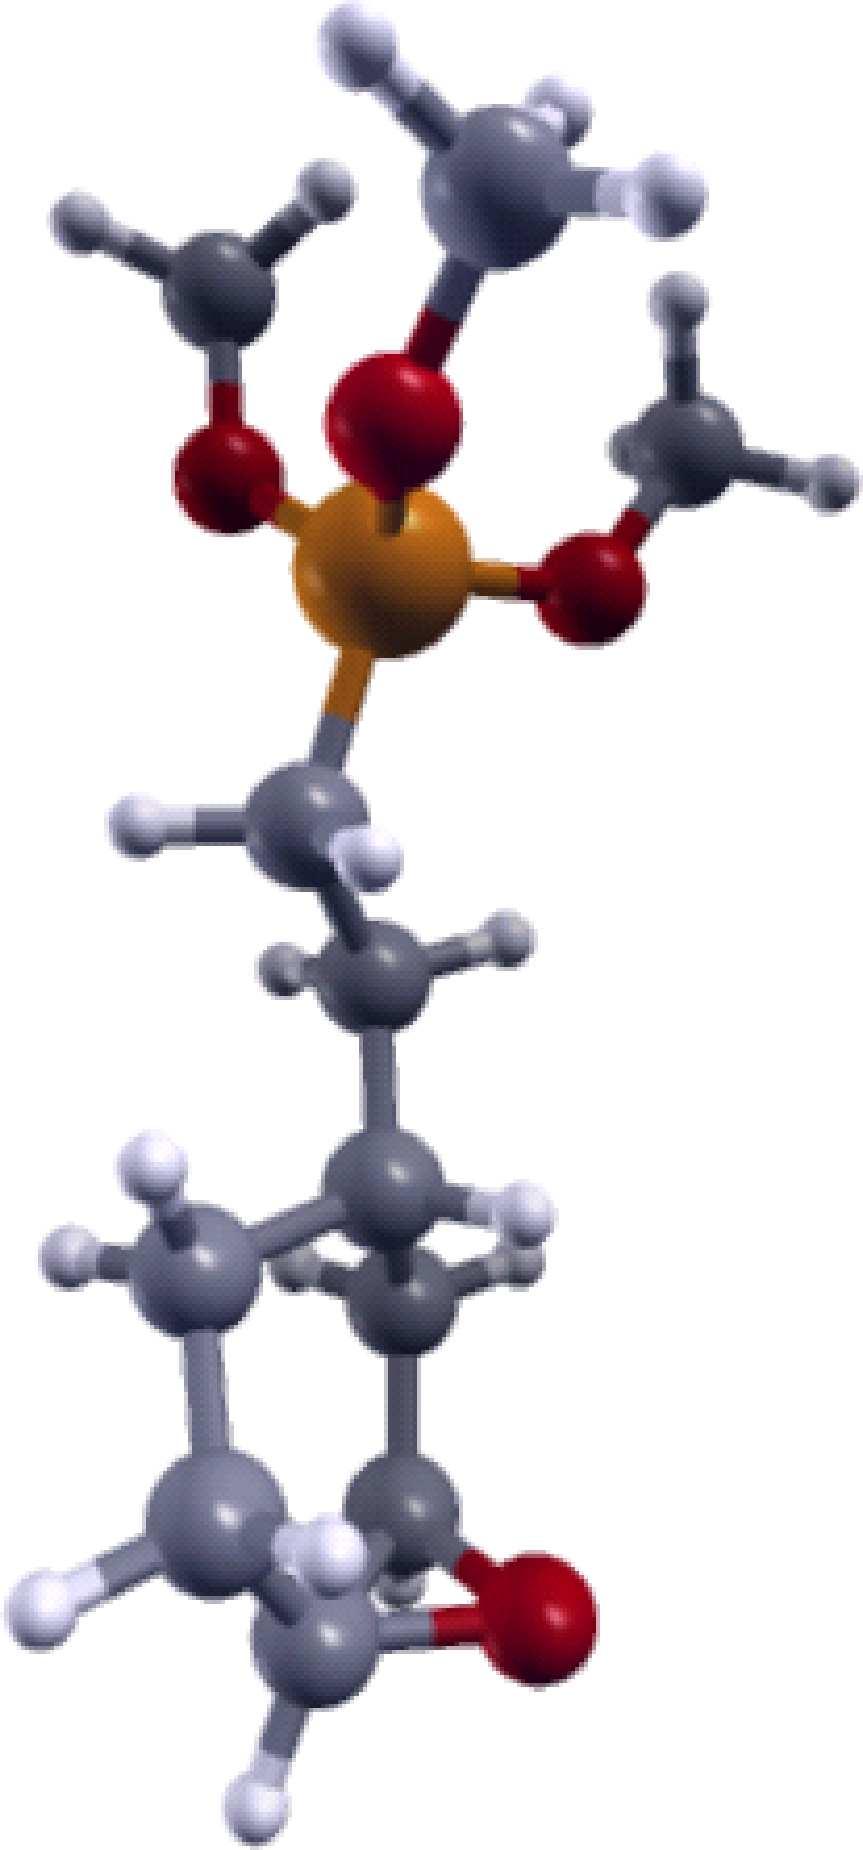 Átomos de oxigênio em vermelho, silício em laranja, carbono em cinza, hidrogênio em branco e nitrogênio em azul claro.